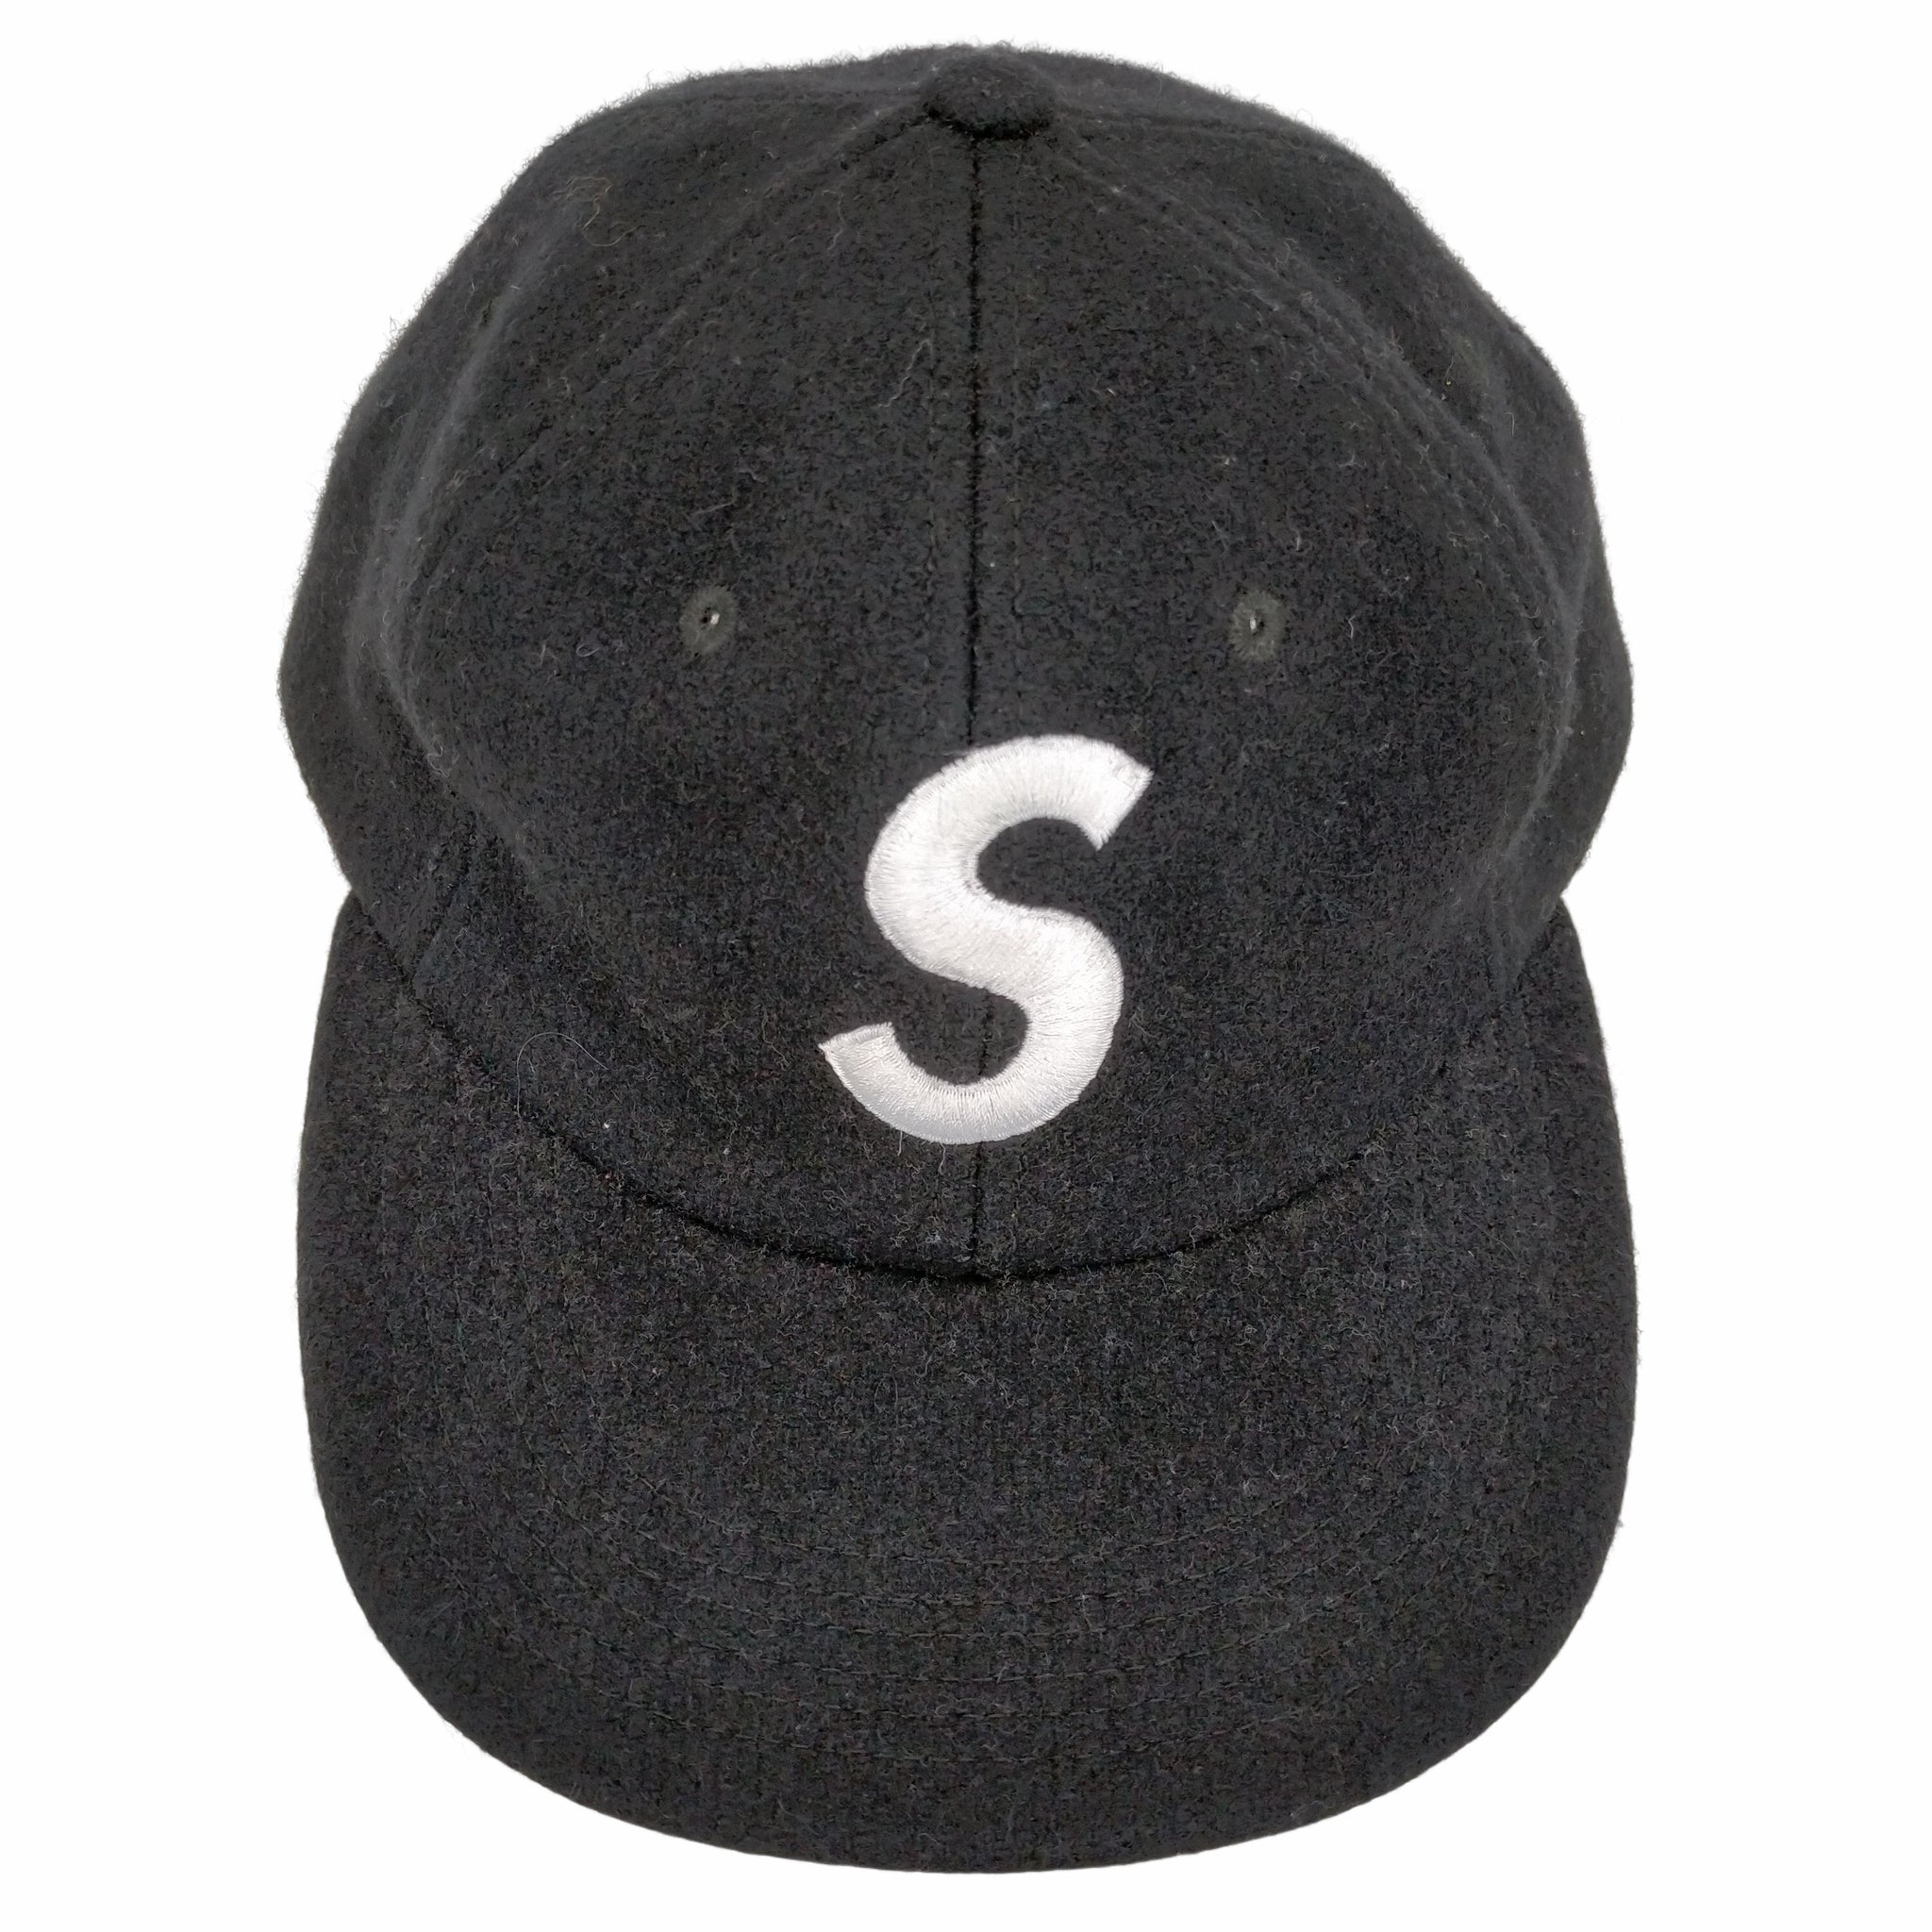 Supreme(シュプリーム)Wool S Logo 6 Panel